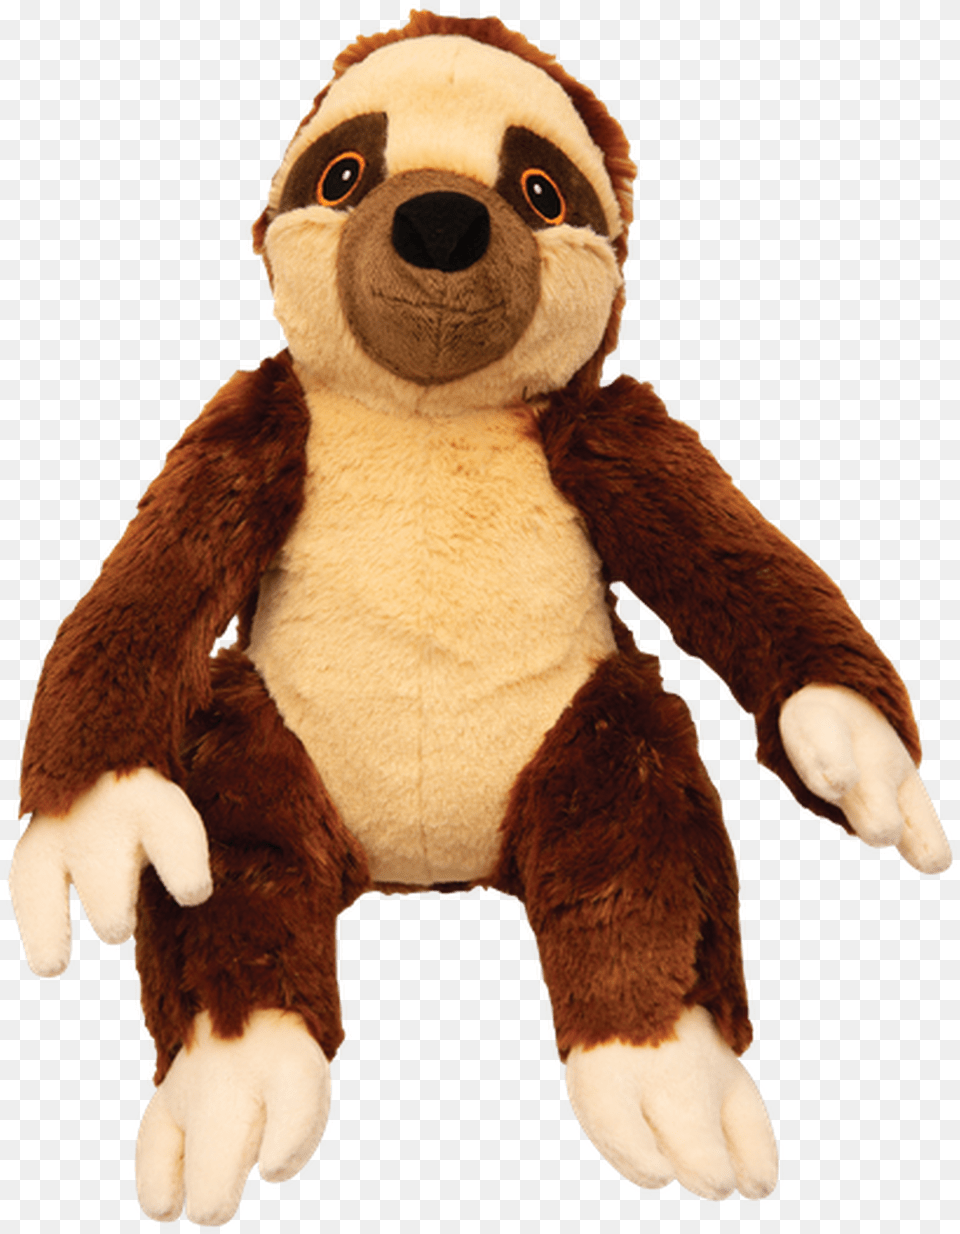 Snugarooz Sasha The Sloth Dog Toy, Plush, Electronics, Hardware Png Image